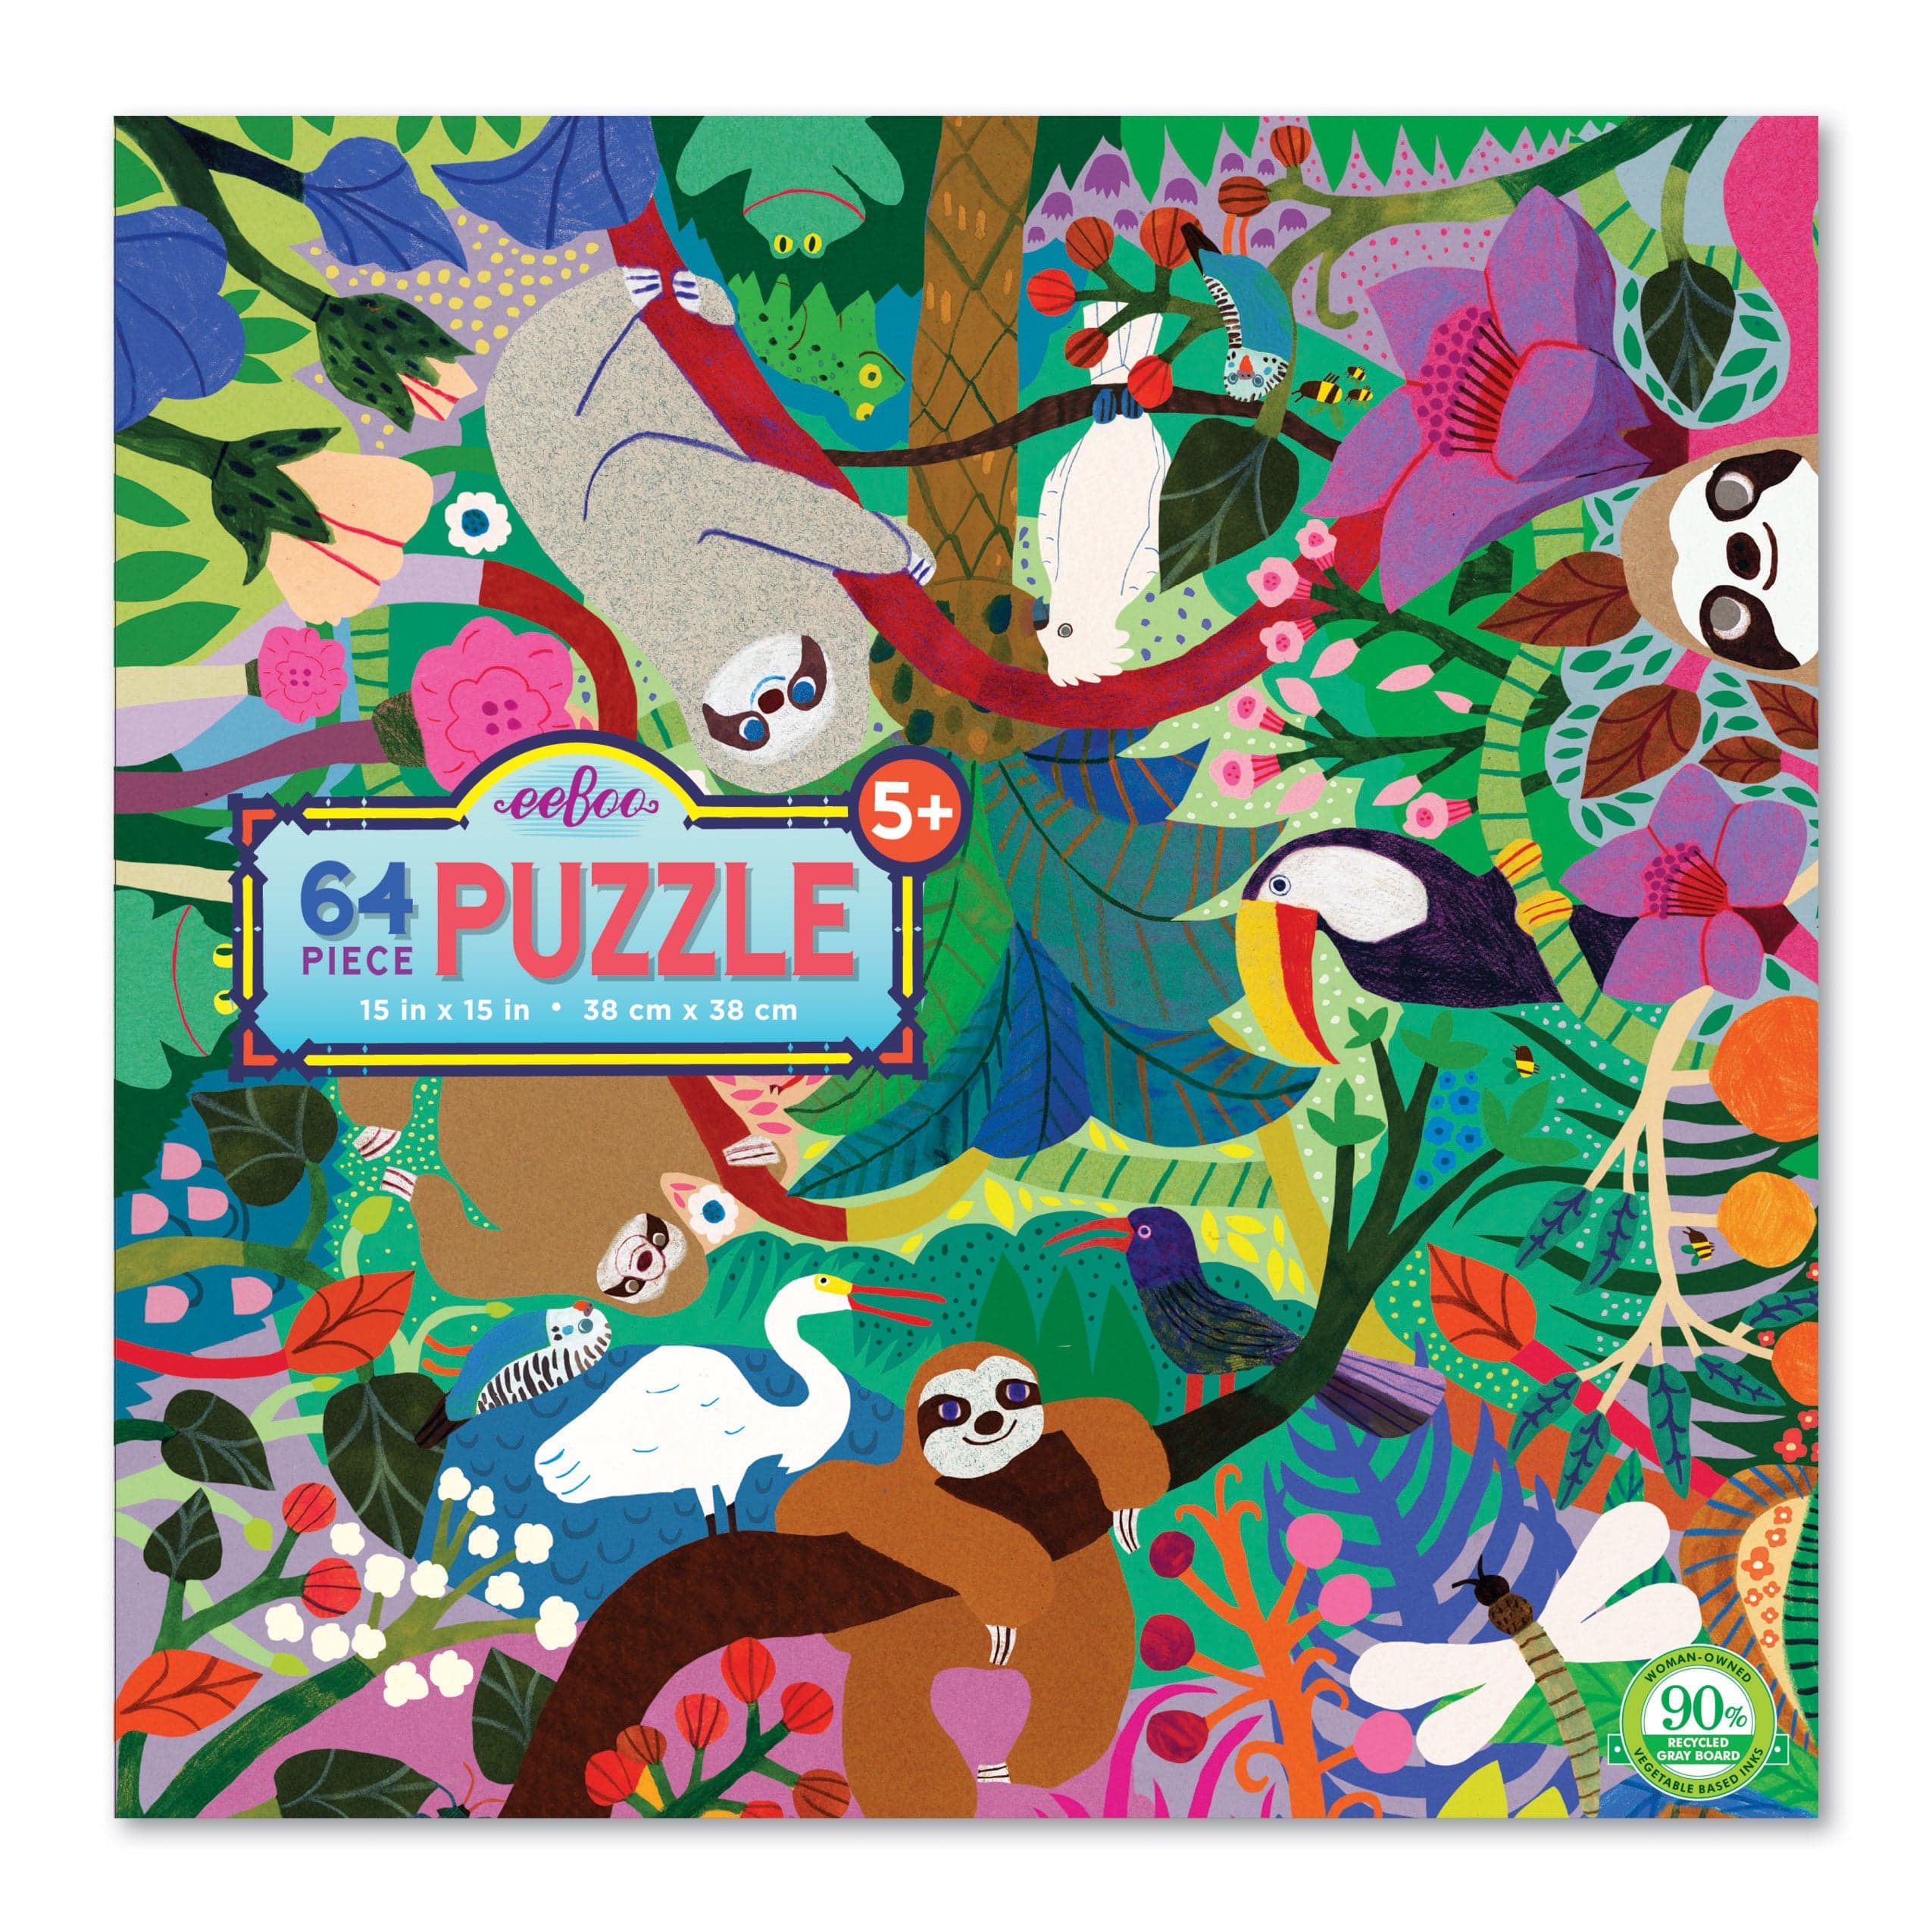 Eeboo Floor Puzzles 64 Pc Puzzle - Sloth at Play